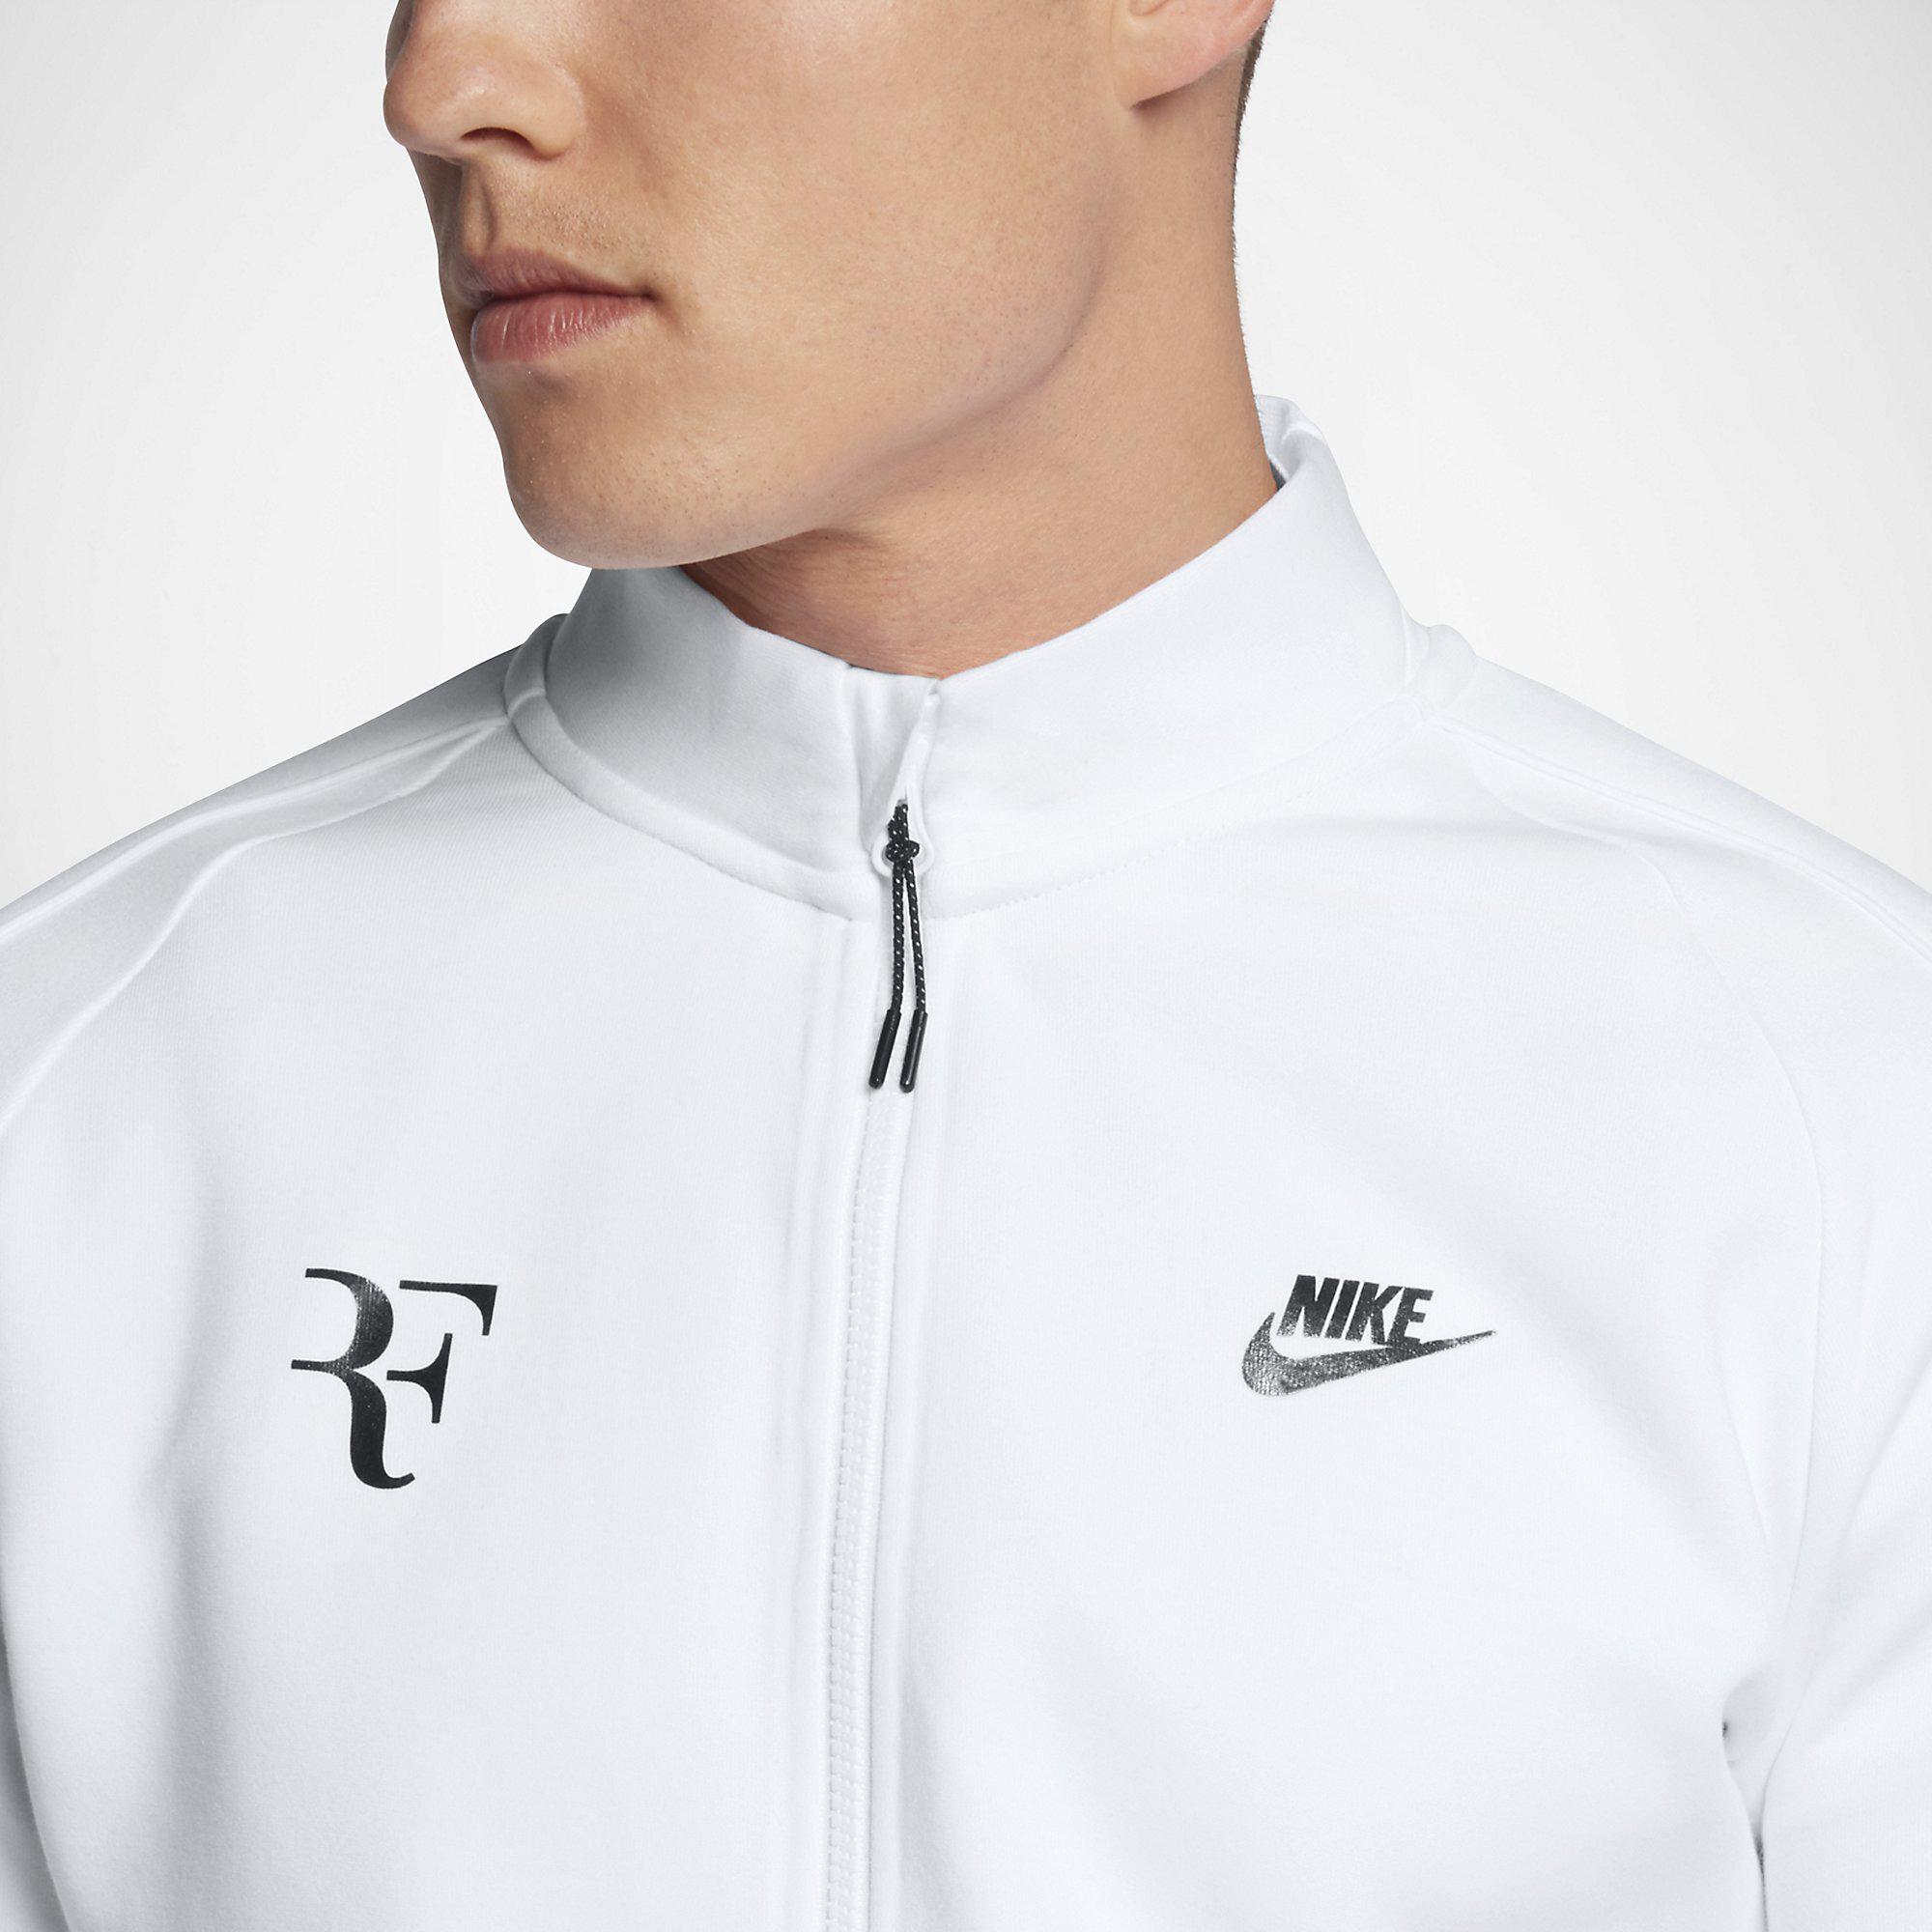 Nike Mens RF Tennis Jacket - White - Tennisnuts.com